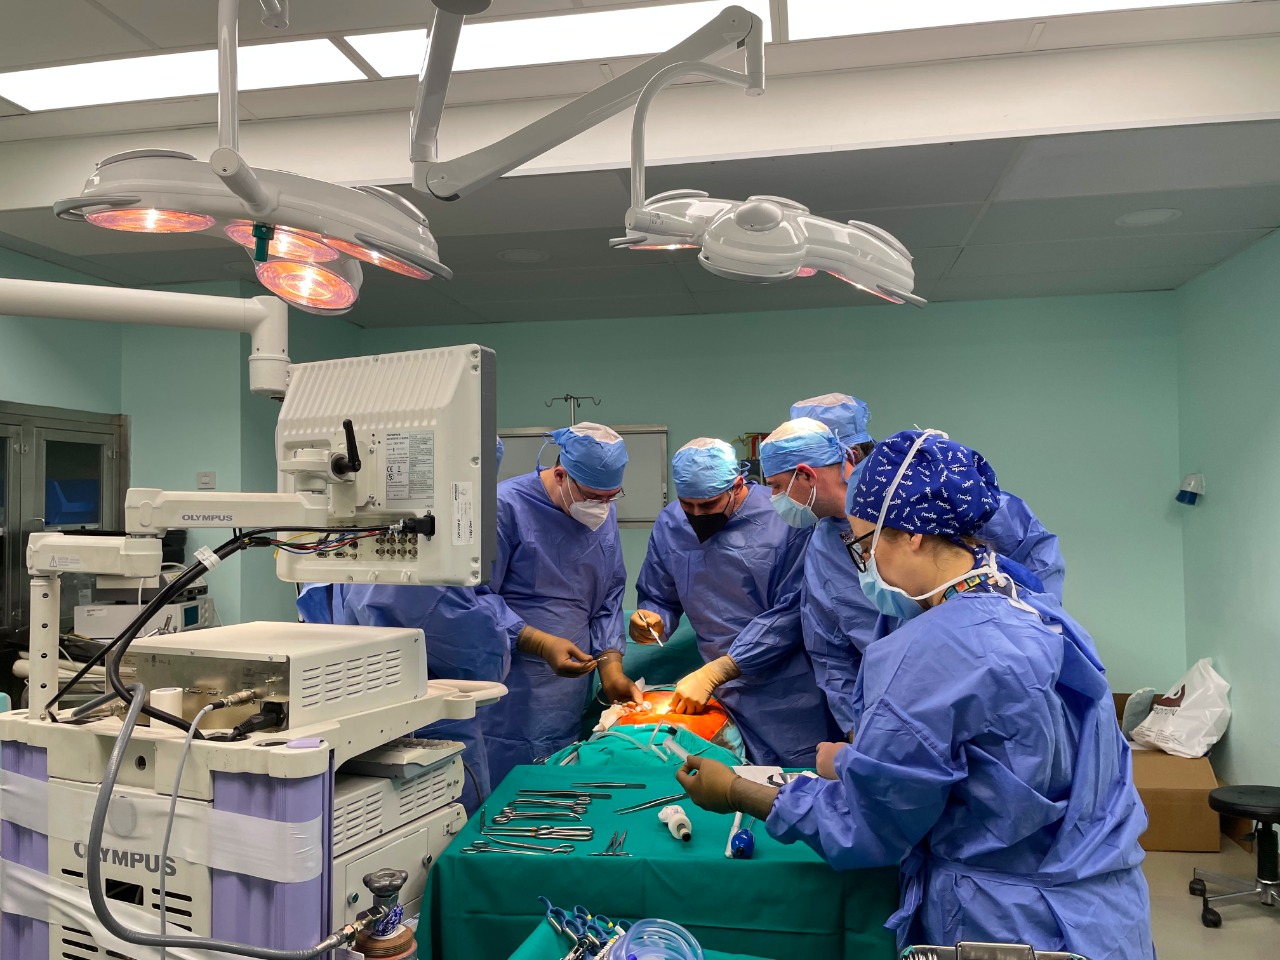 Ζωντανή αναμετάδοση χειρουργικής επέμβασης C.LA.SS Courses 2019 4th Chapter